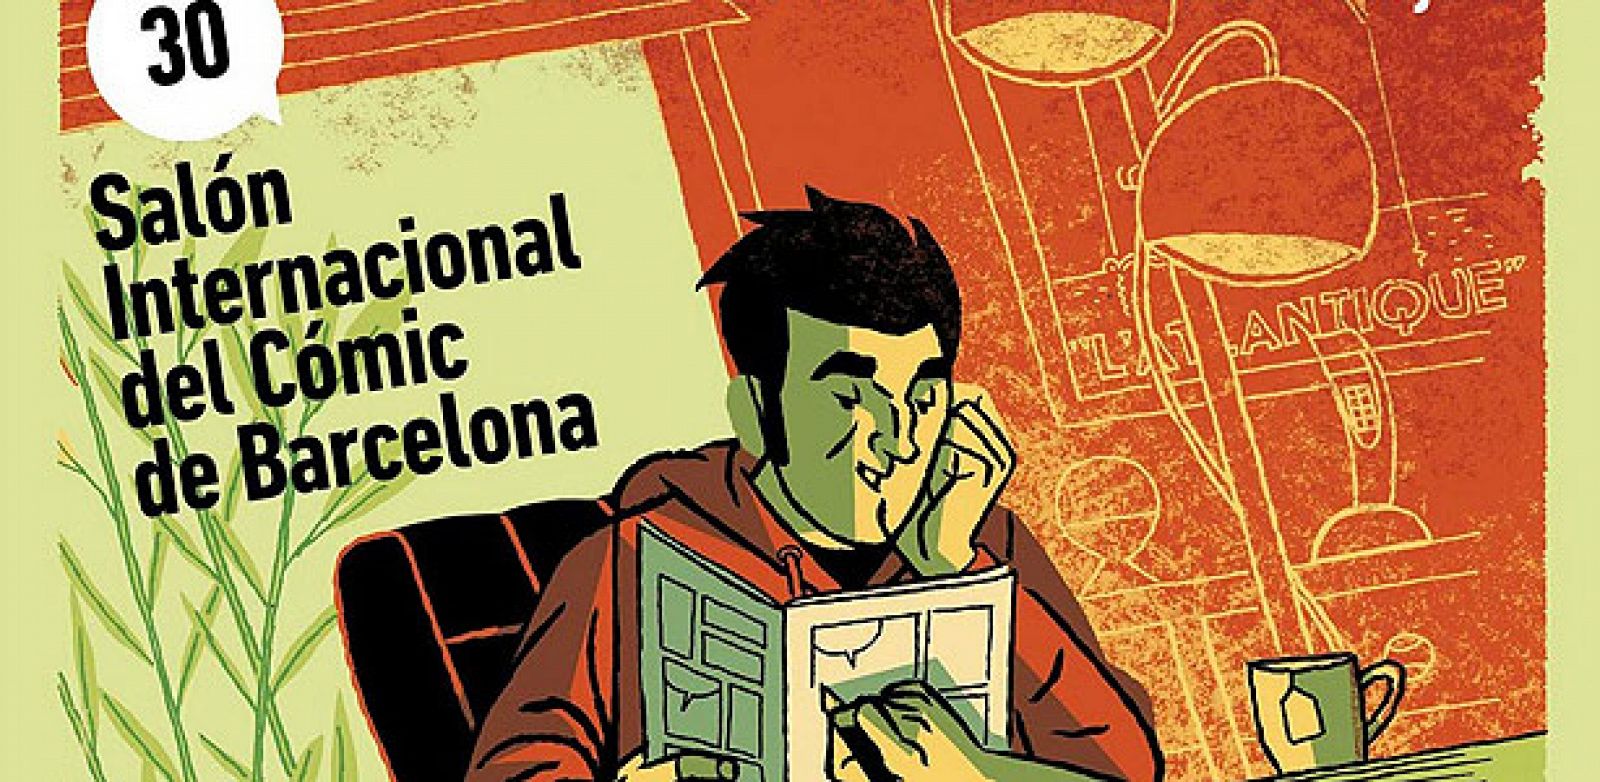 Fragmento del cartel del Salón del cómic de Barcelona 2012